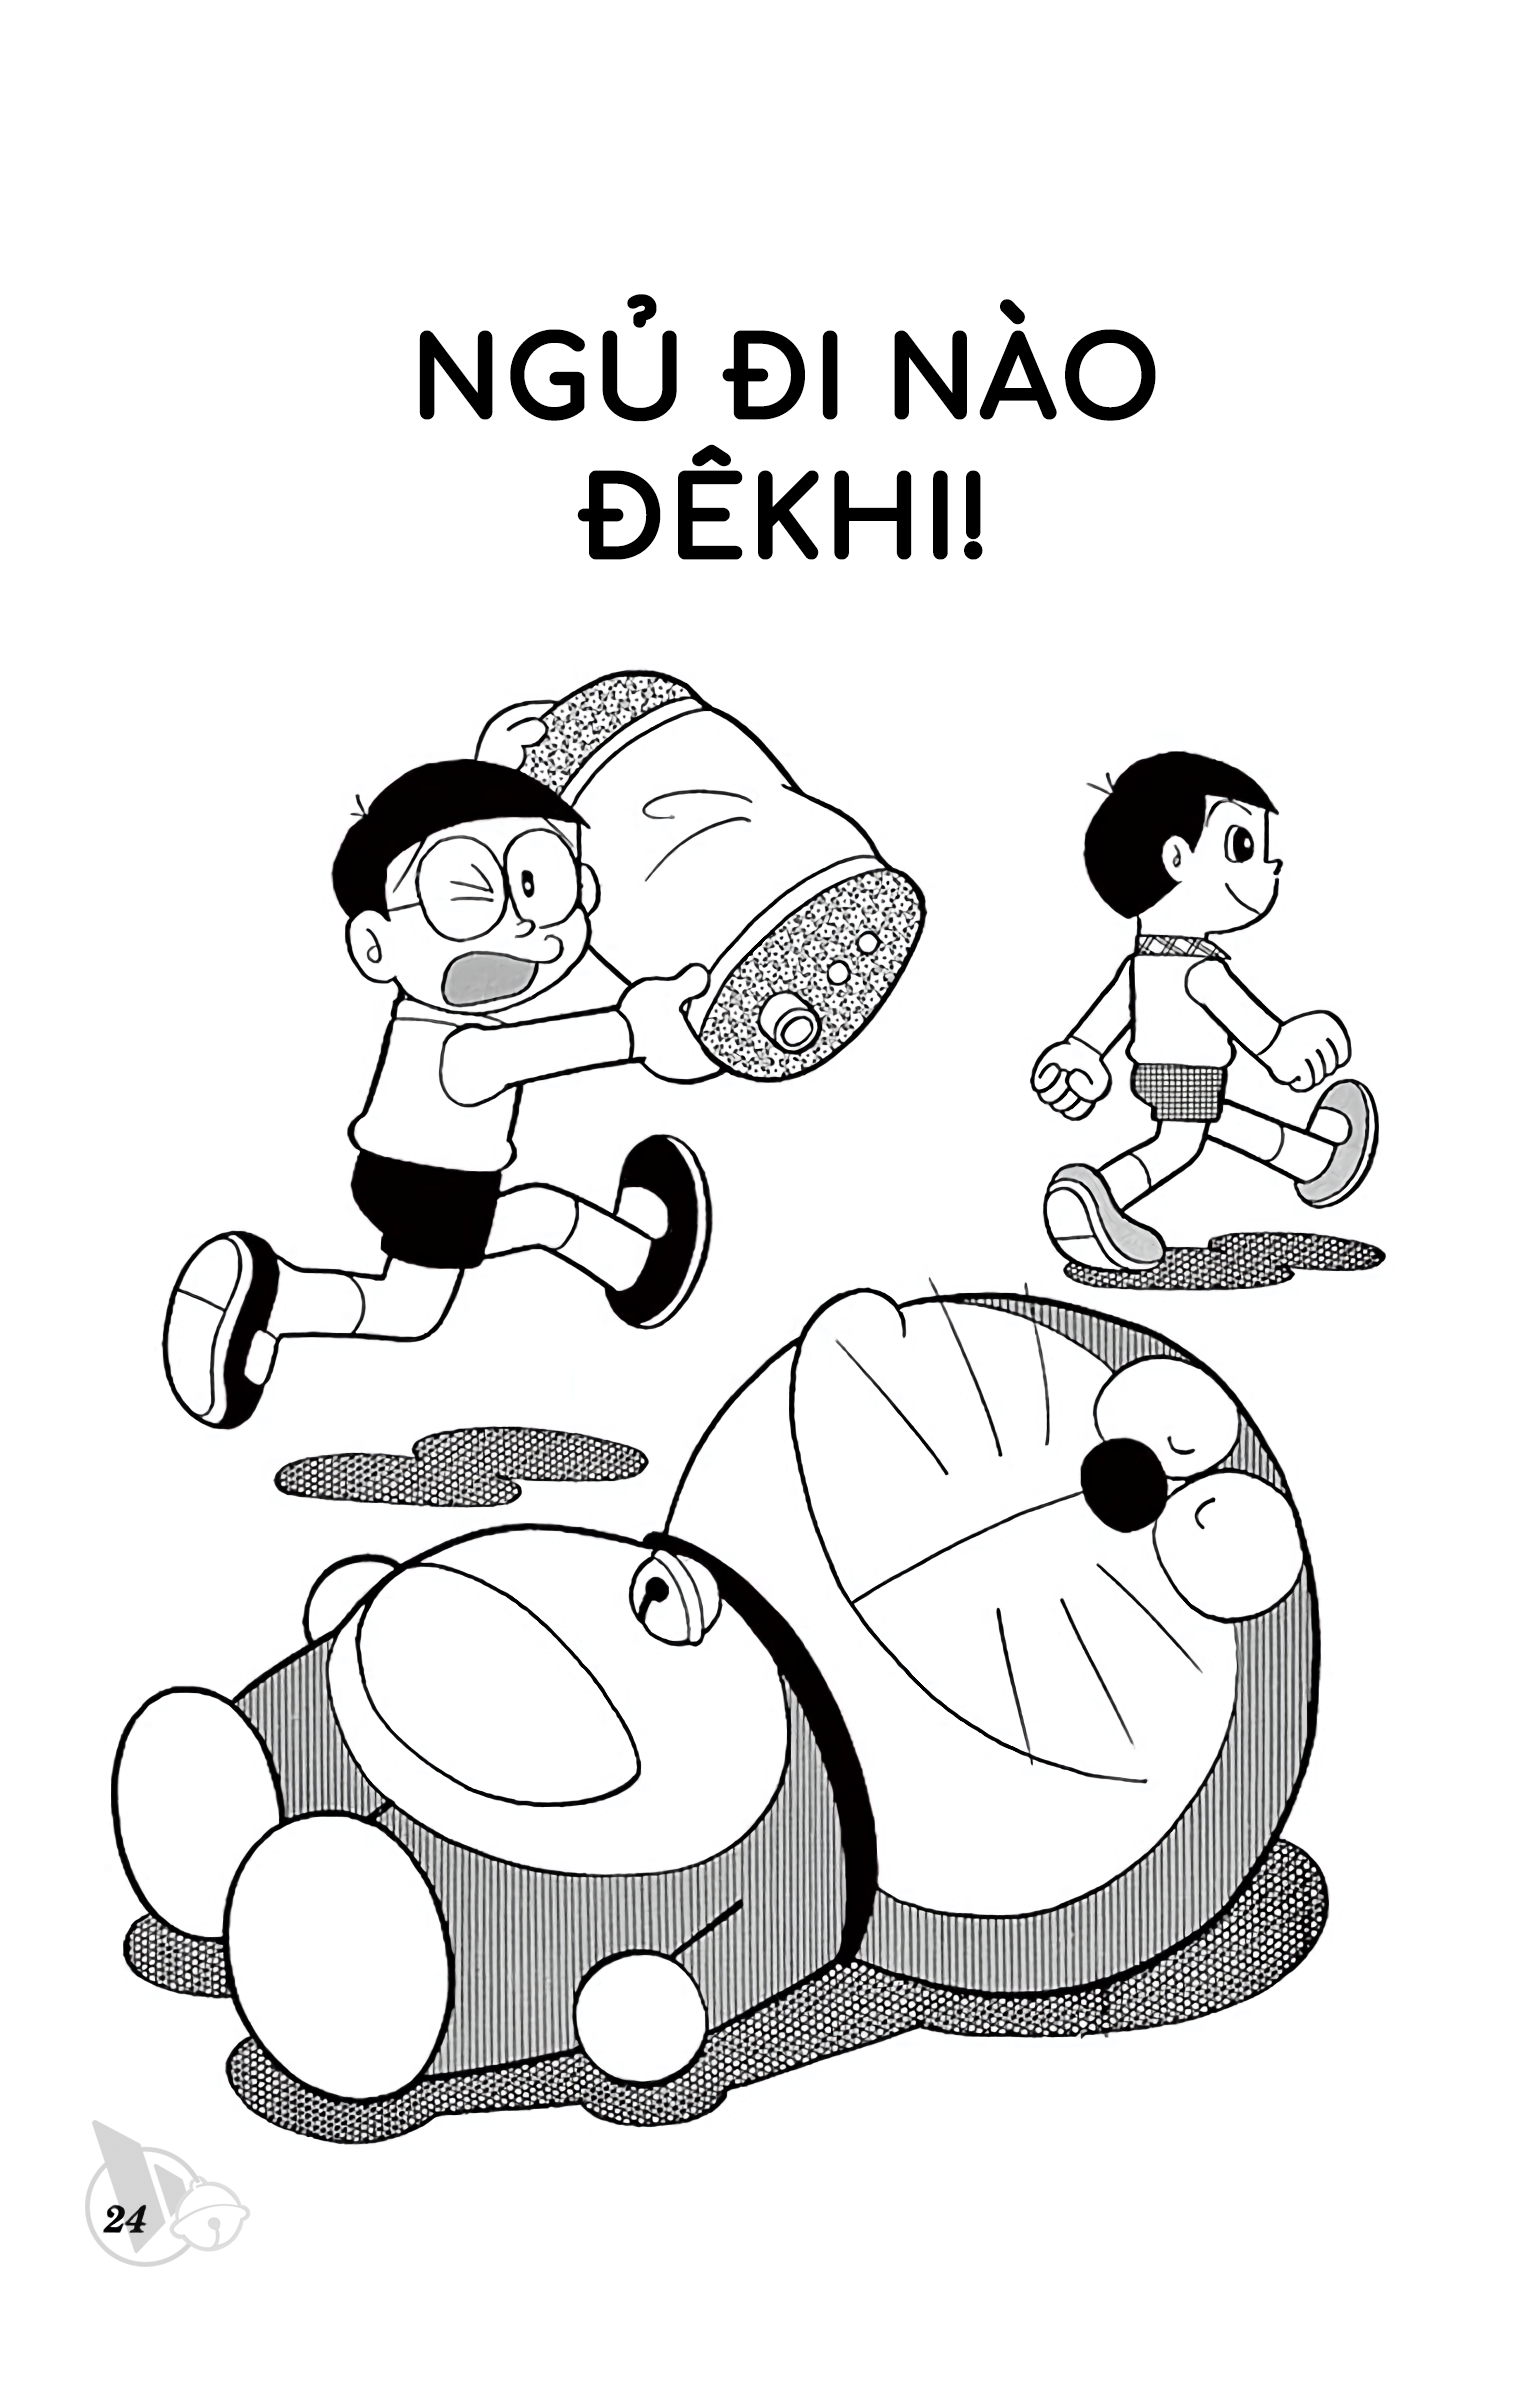 Bằng ấy tuổi đầu nhưng chị em chưa chắc đã biết hết những nhân vật bí ẩn trong Doraemon - Ảnh 4.